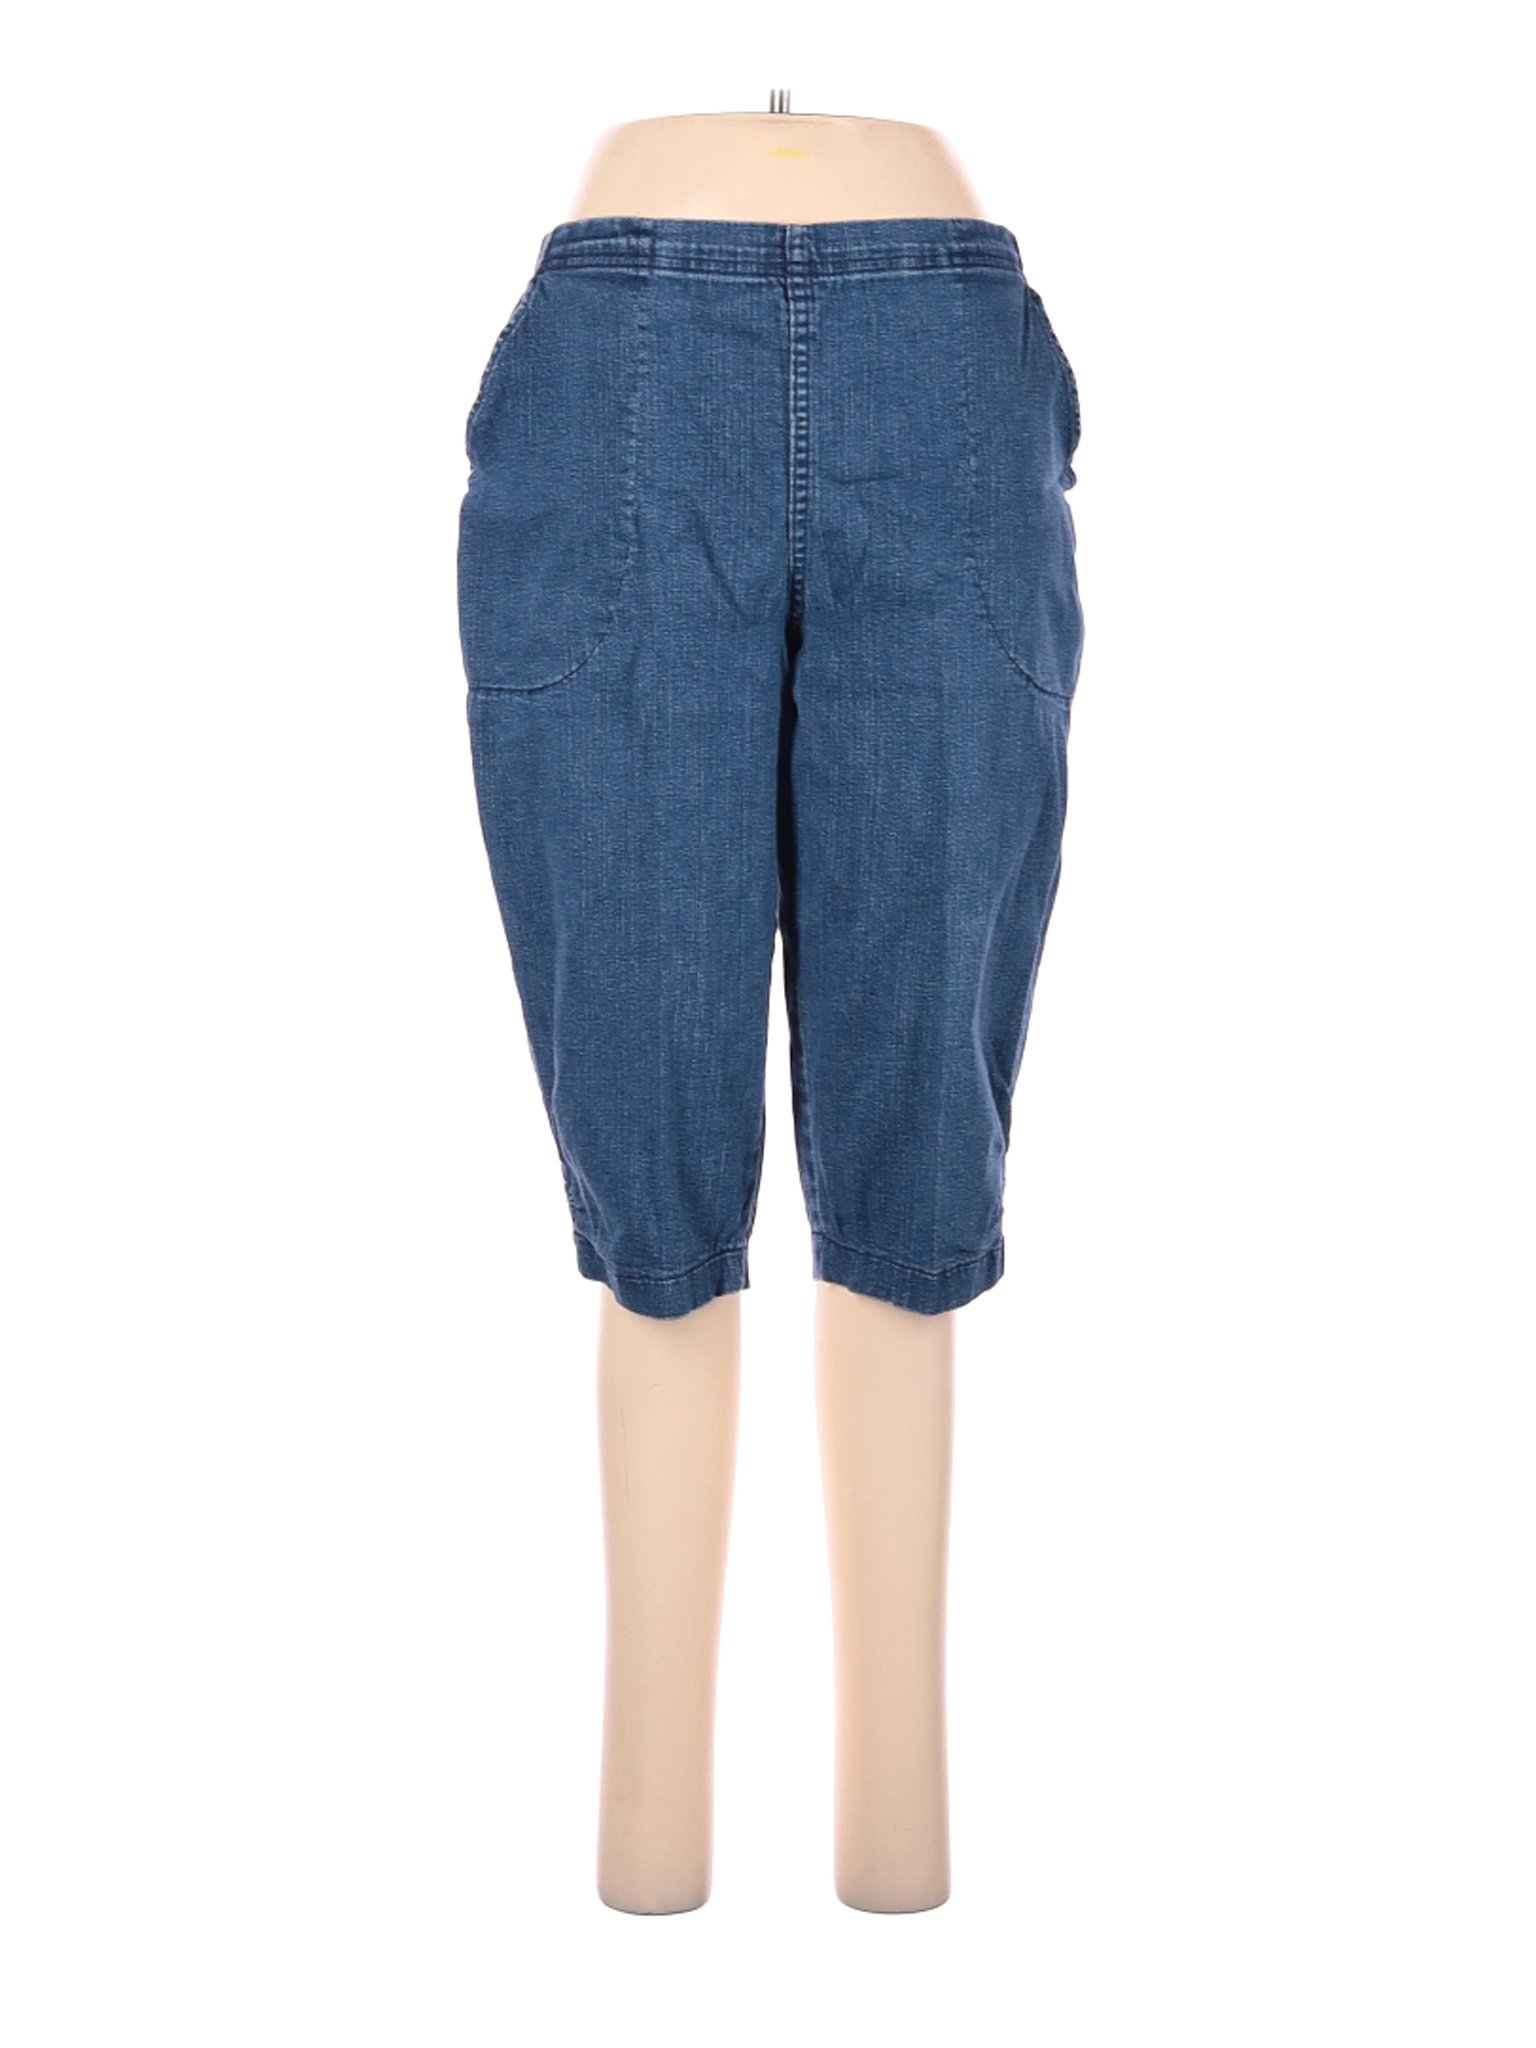 Croft & Barrow Women Blue Jeans 12 Petites | eBay